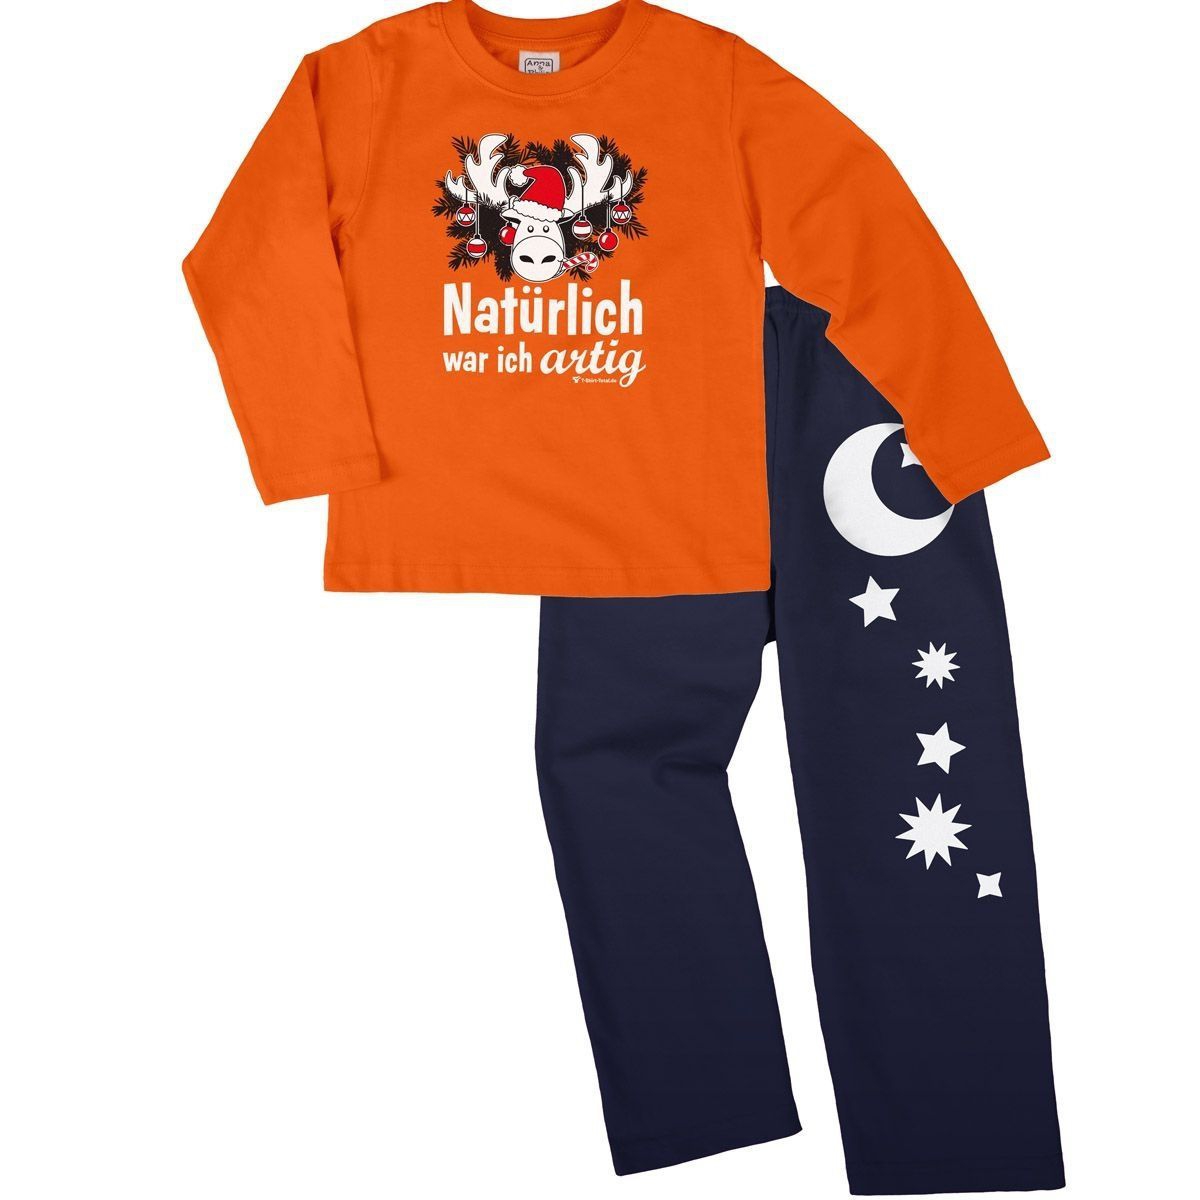 Natürlich artig Pyjama Set orange / navy 92